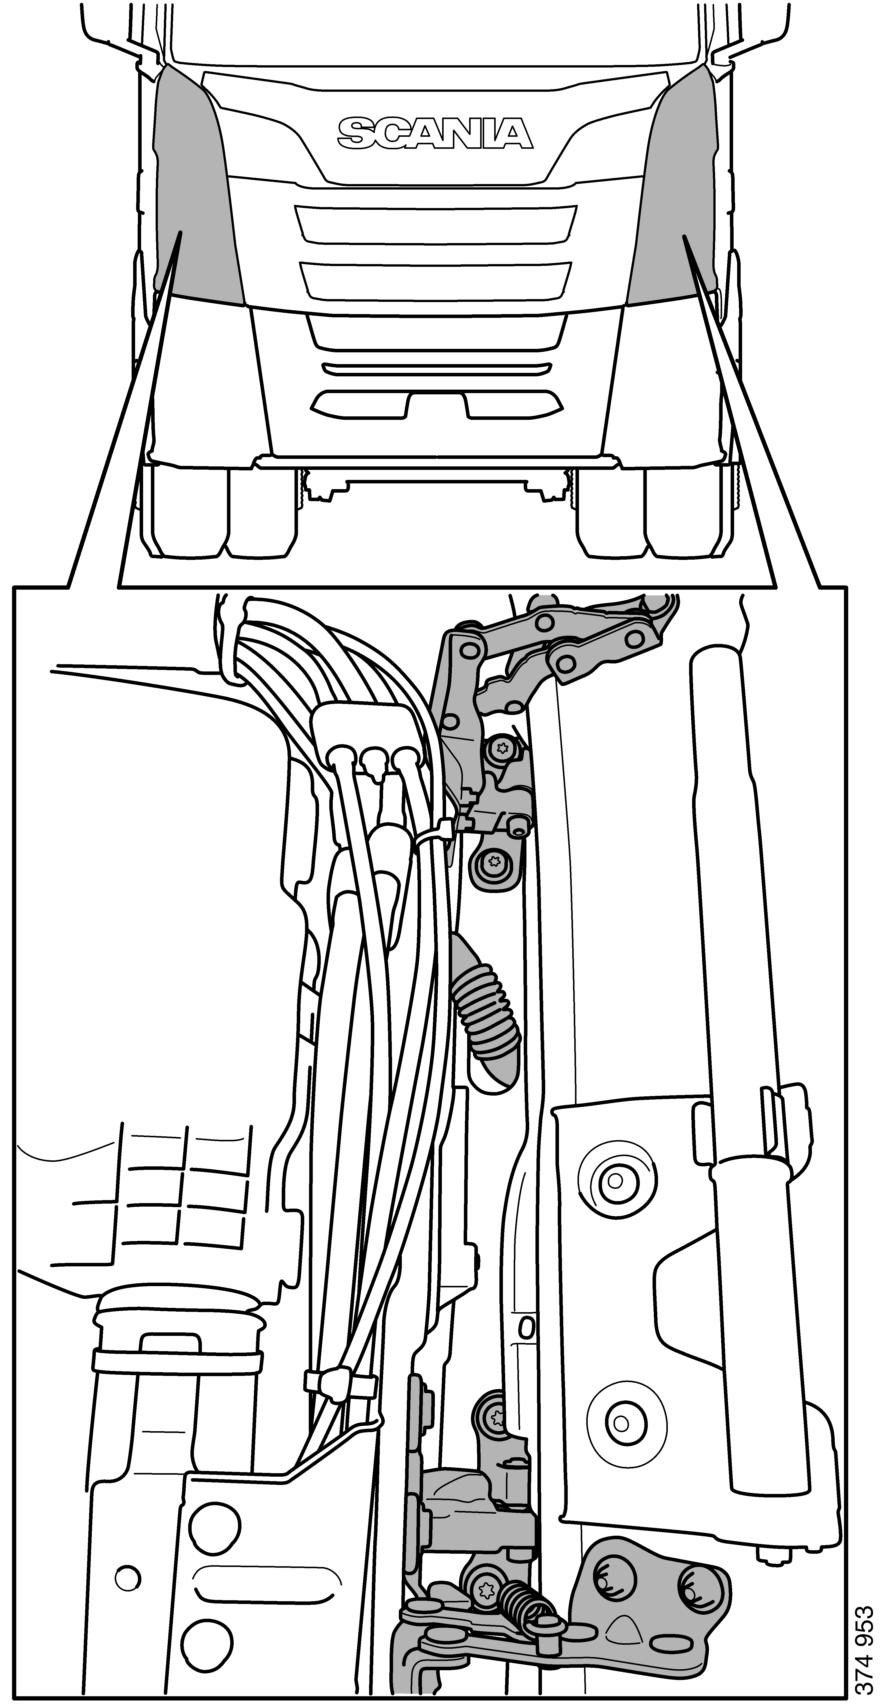 Wejścia do pojazdu Wejścia do pojazdu Drzwi Drzwi można wymontować z kabiny, przecinając zawiasy. OSTRZEŻENIE! Drzwi mogą ważyć do 60 kg. 1.